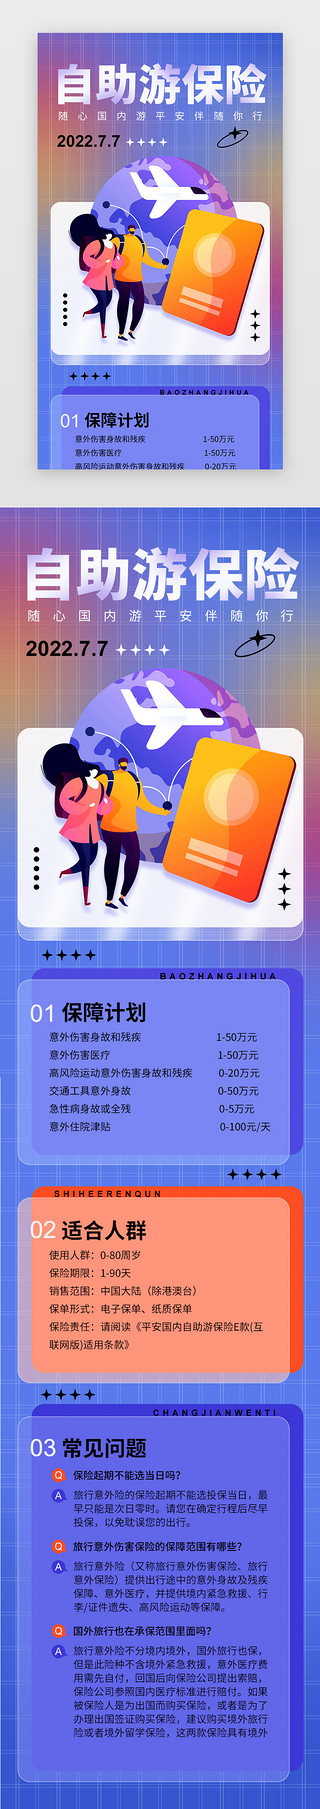 旅游海报UI设计素材_旅游保险h5酸性紫色旅行人物